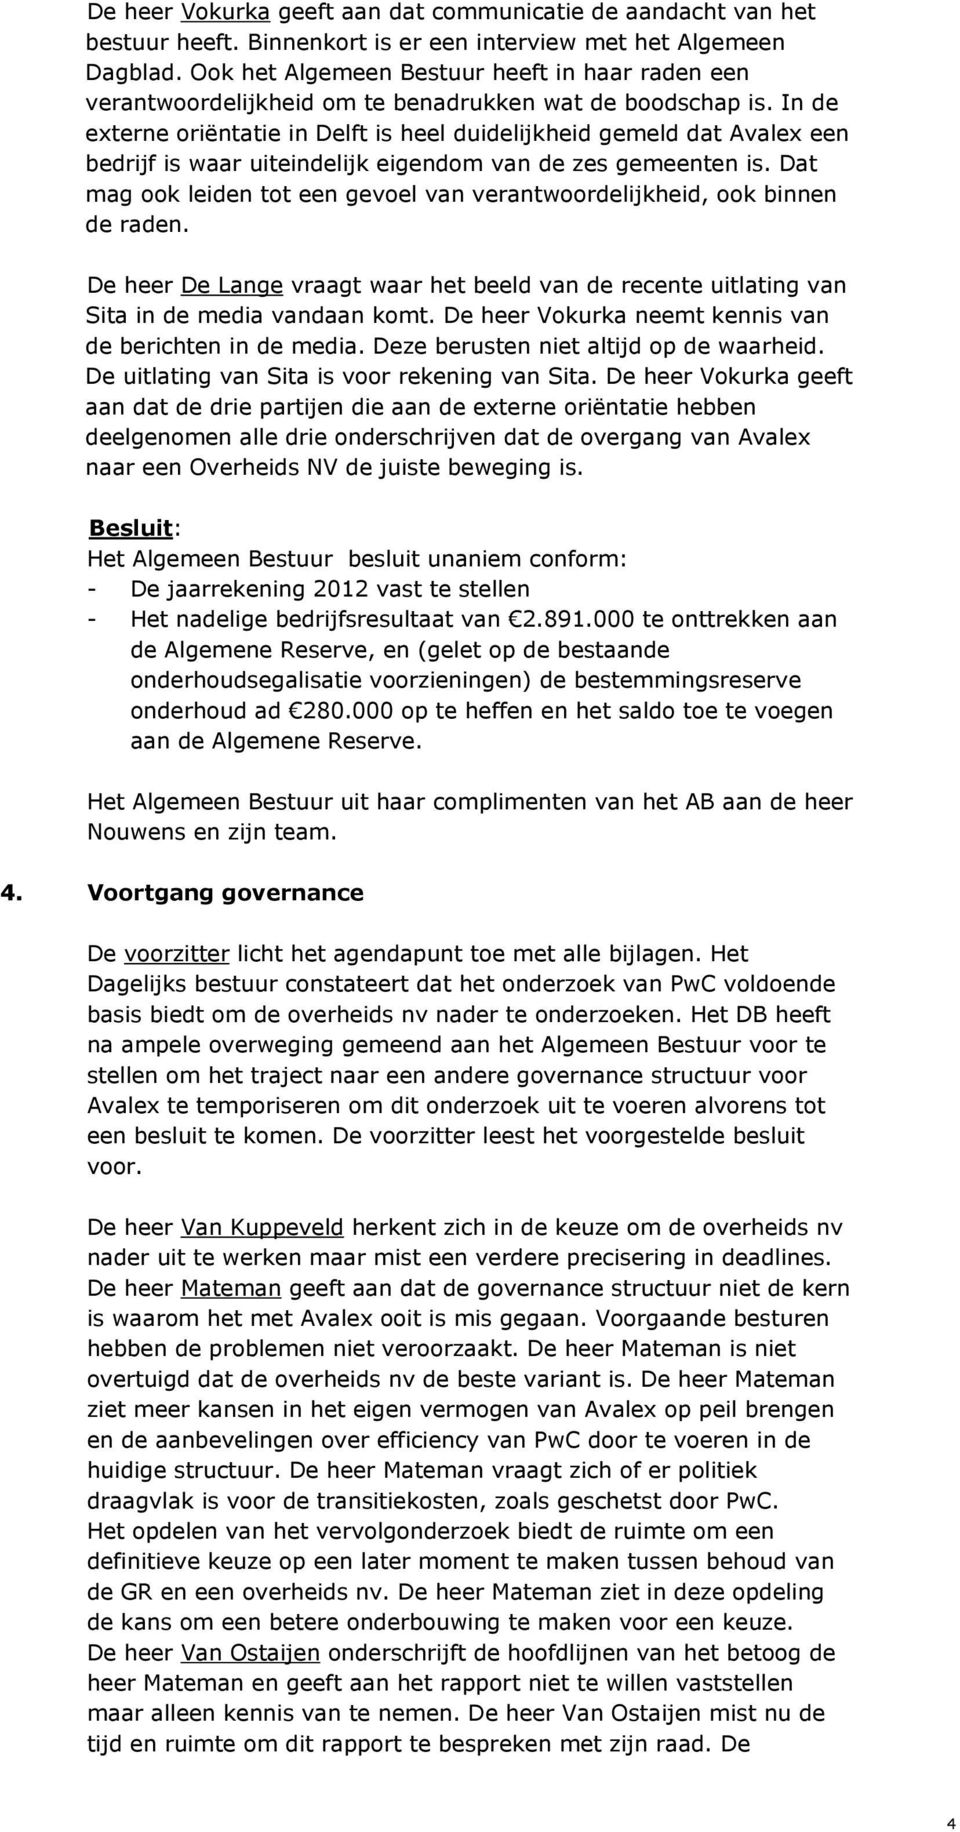 In de externe oriëntatie in Delft is heel duidelijkheid gemeld dat Avalex een bedrijf is waar uiteindelijk eigendom van de zes gemeenten is.